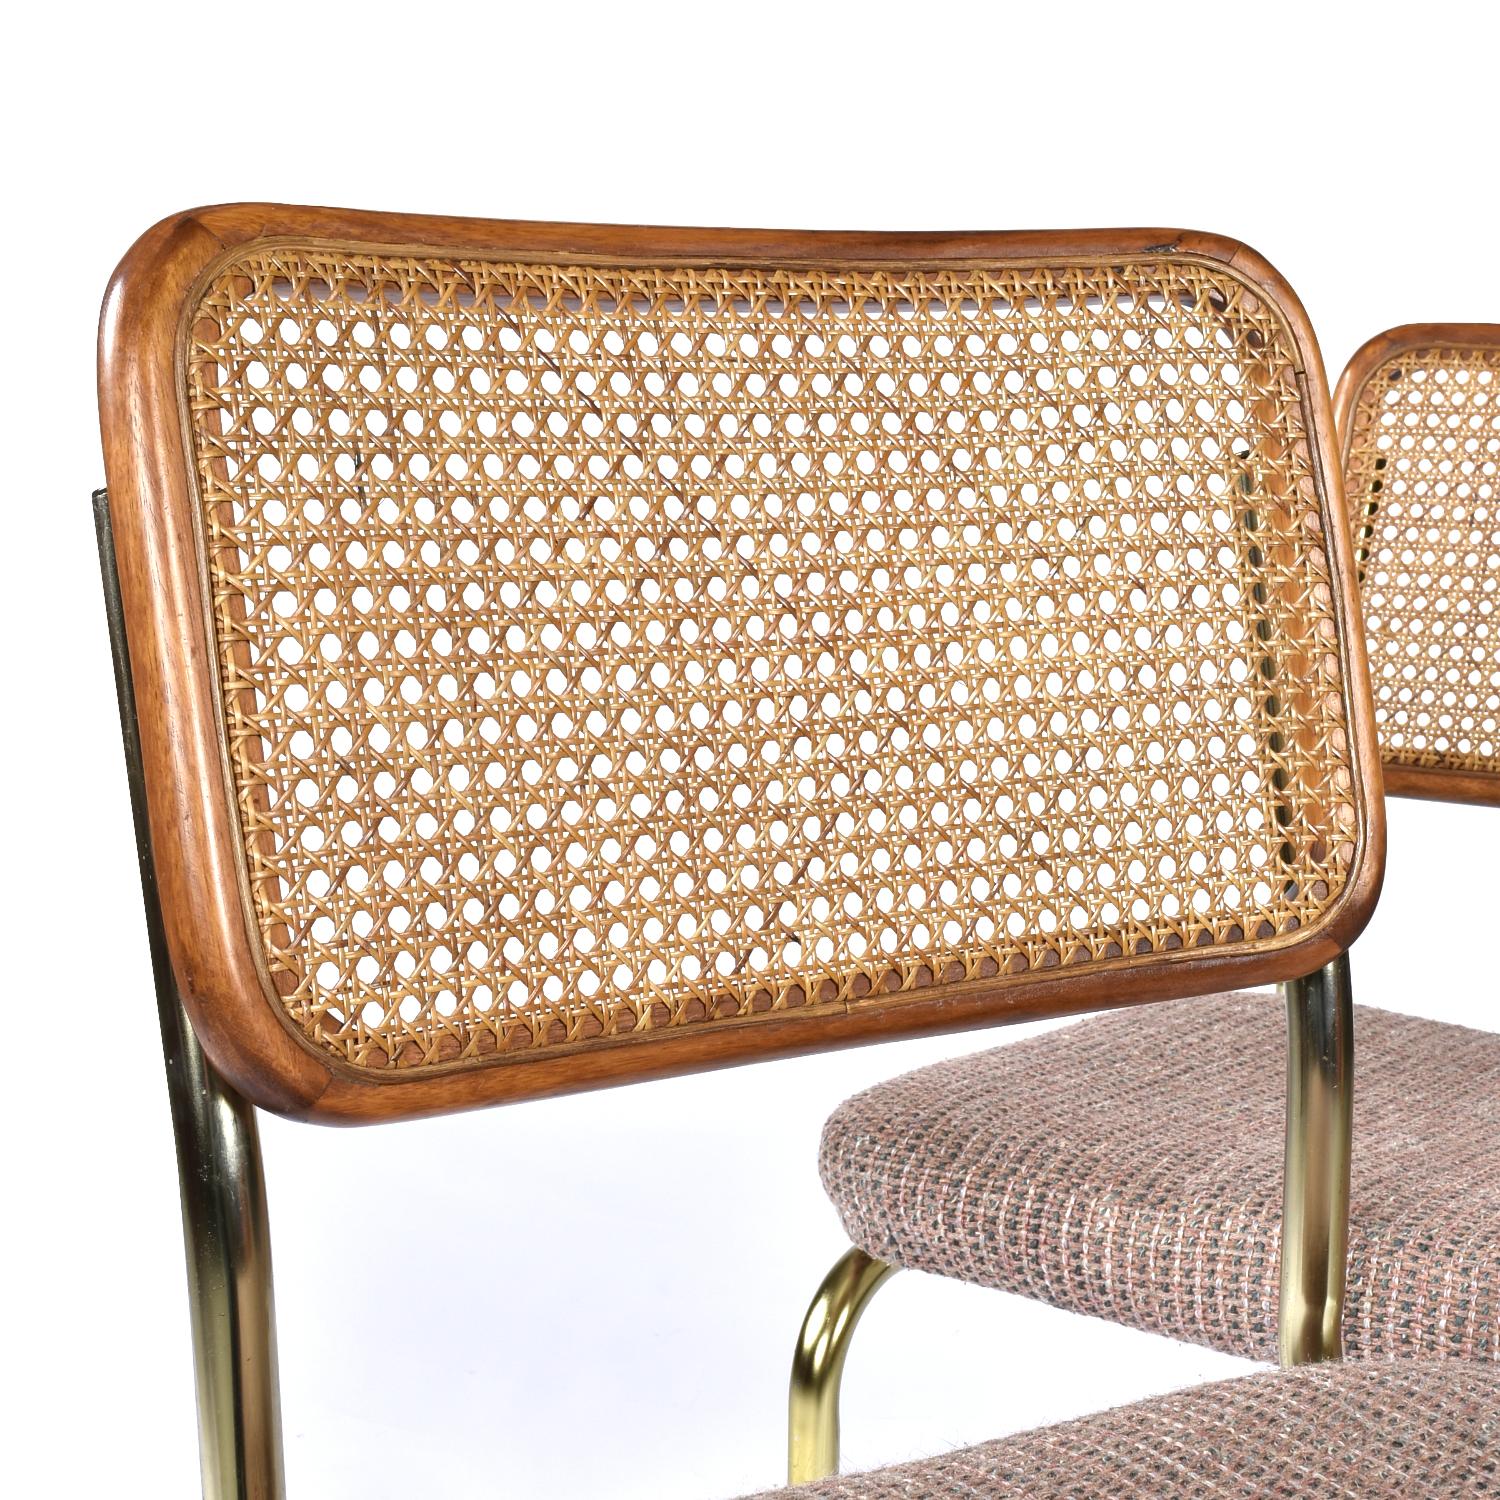 Satz von vier Stühlen im Cesca-Stil mit mauvefarbenen Sitzpolstern. Die Nineteen-Laties-Stühle stammen etwa aus den 1980er Jahren. Die Stühle haben ein schlankes Freischwinger-Design. Diese federähnliche Form sorgt für einen gewissen Schwebeeffekt.